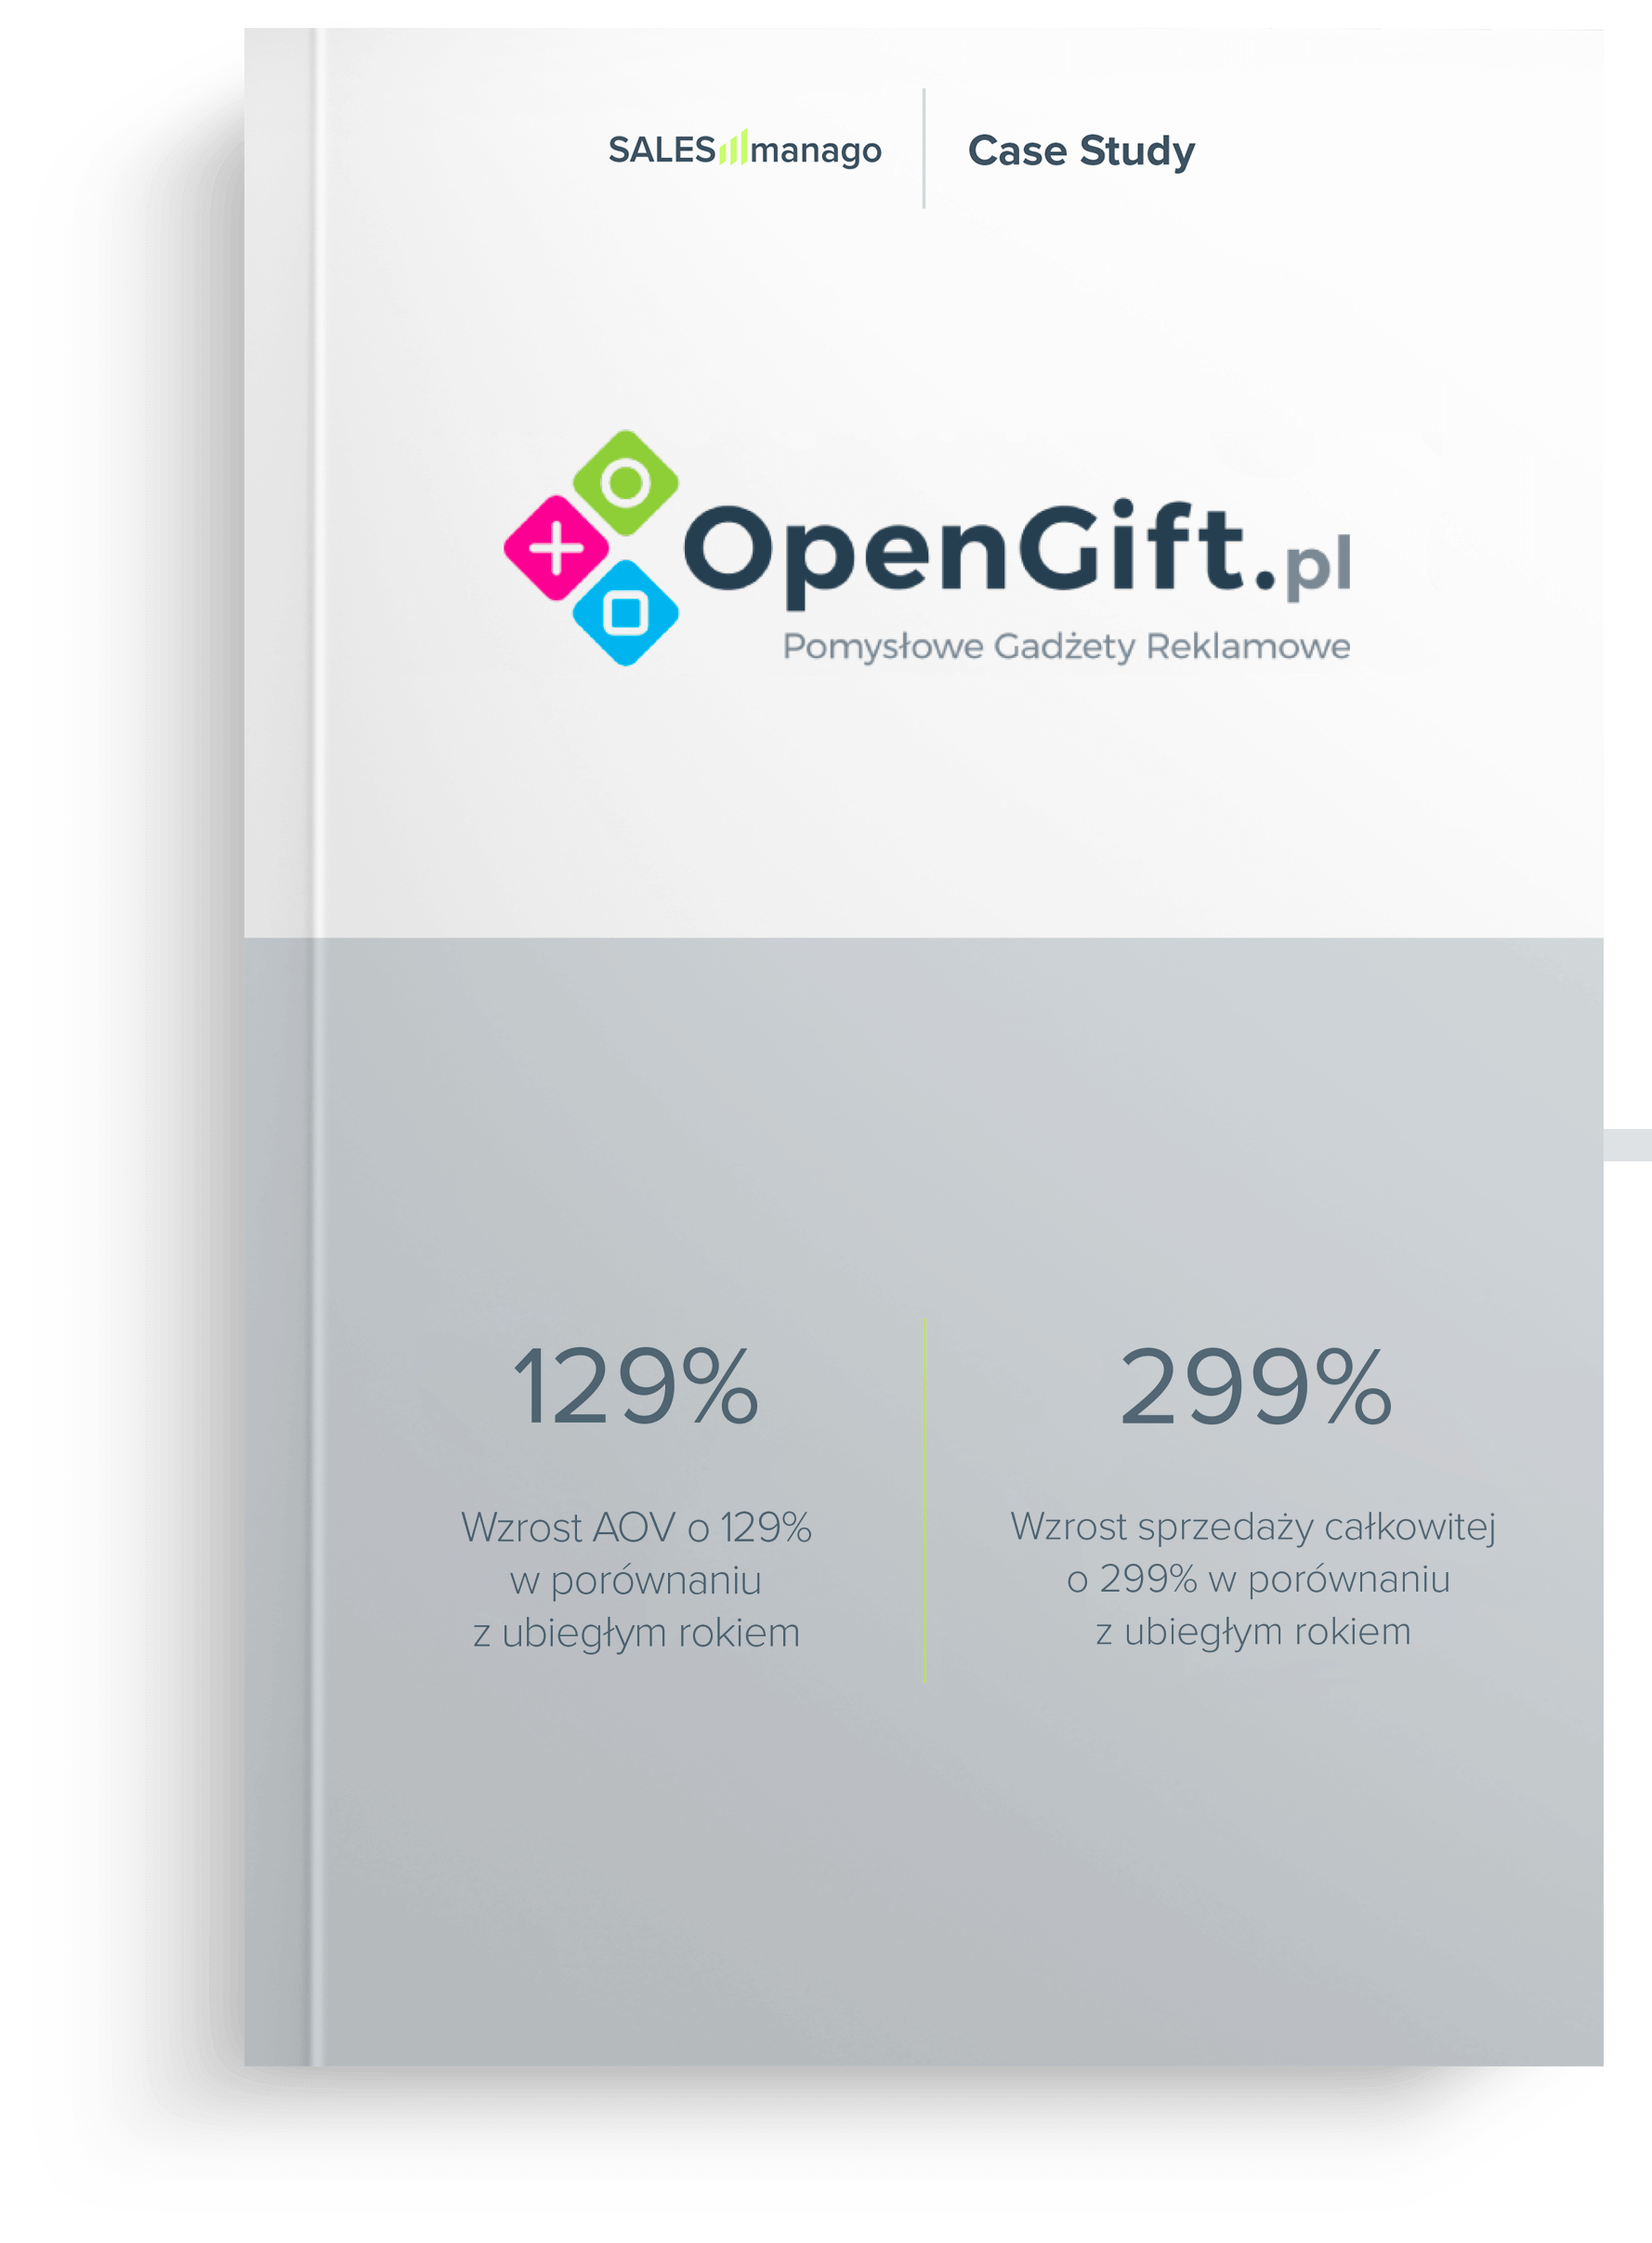 OpenGift cas study